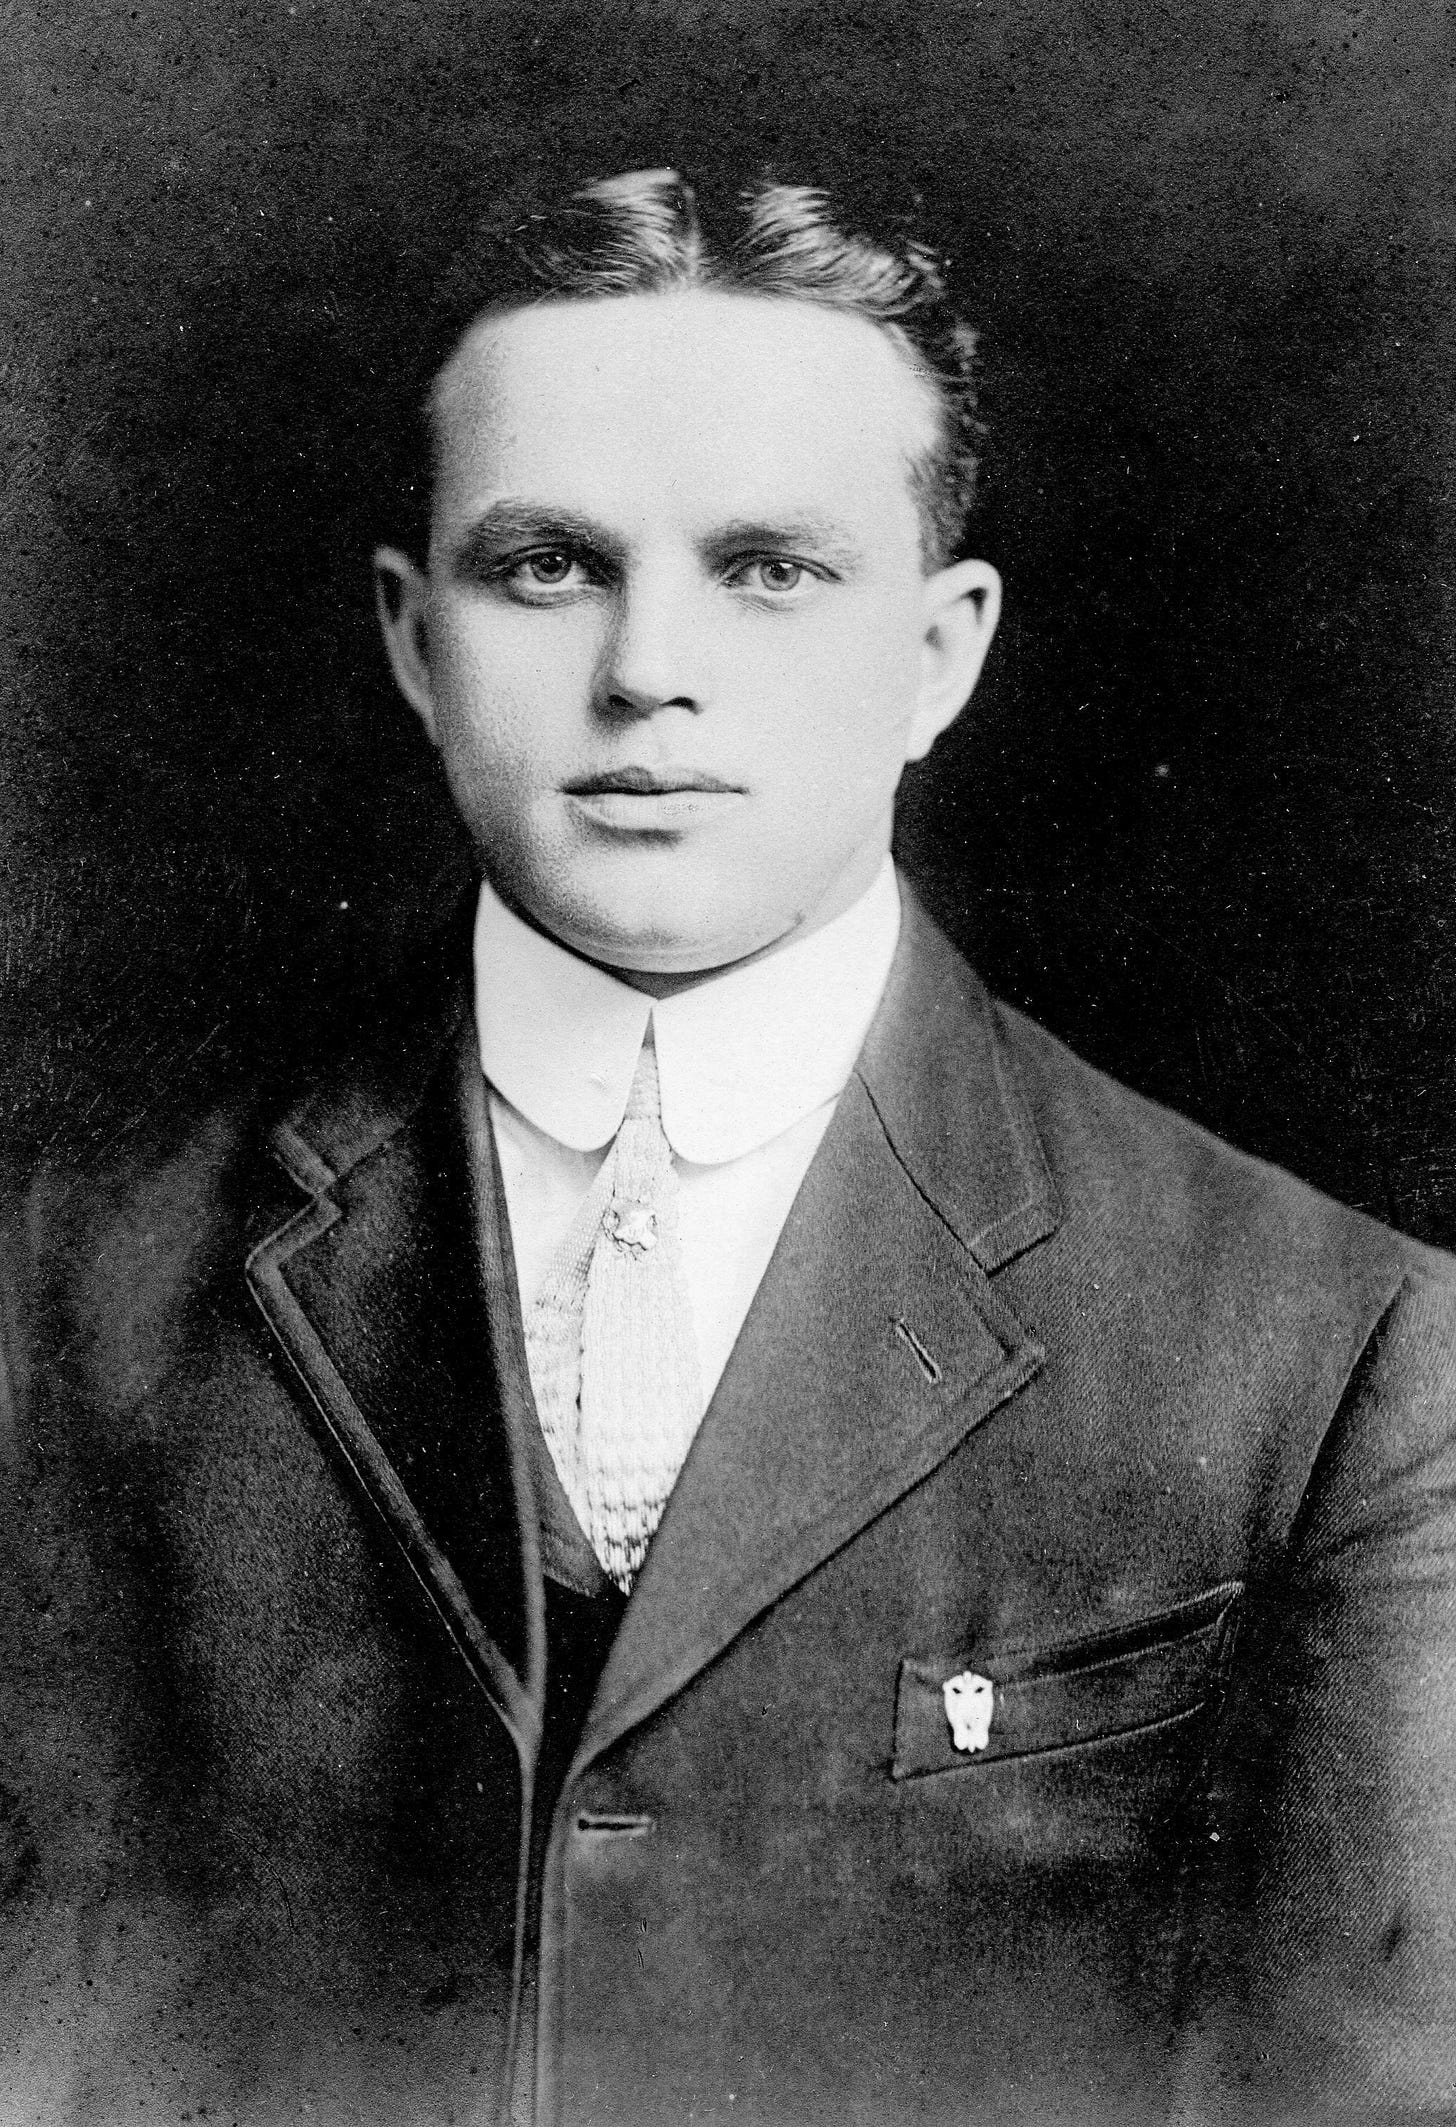 George W. Barrett